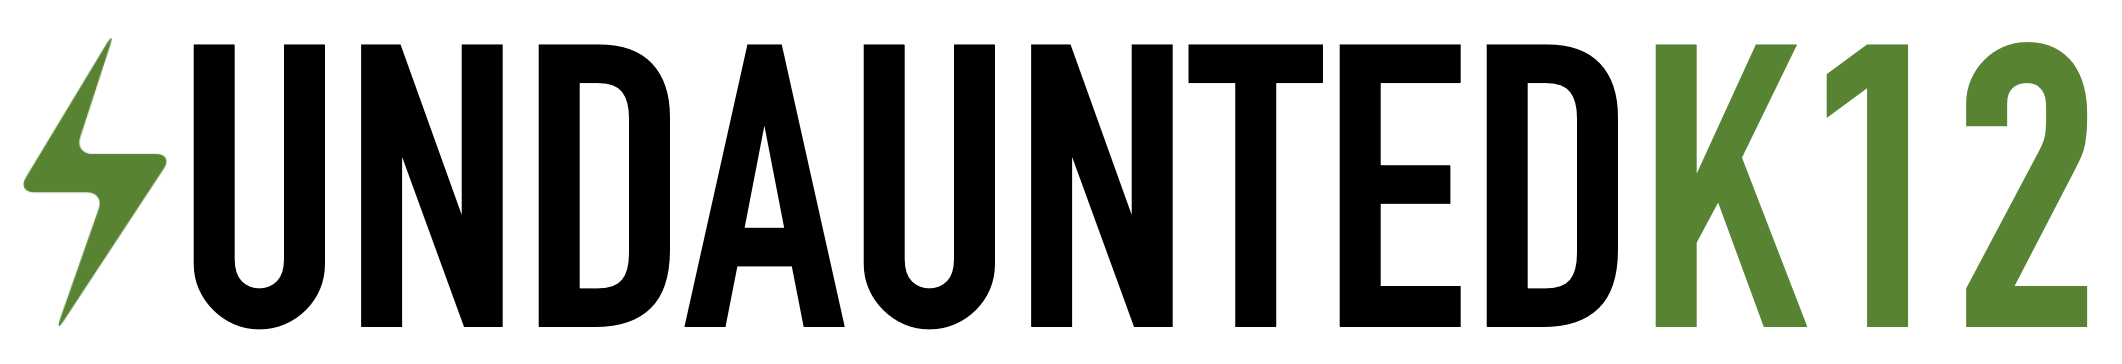 UndauntedK12 Logo - Jonathan Klein.png